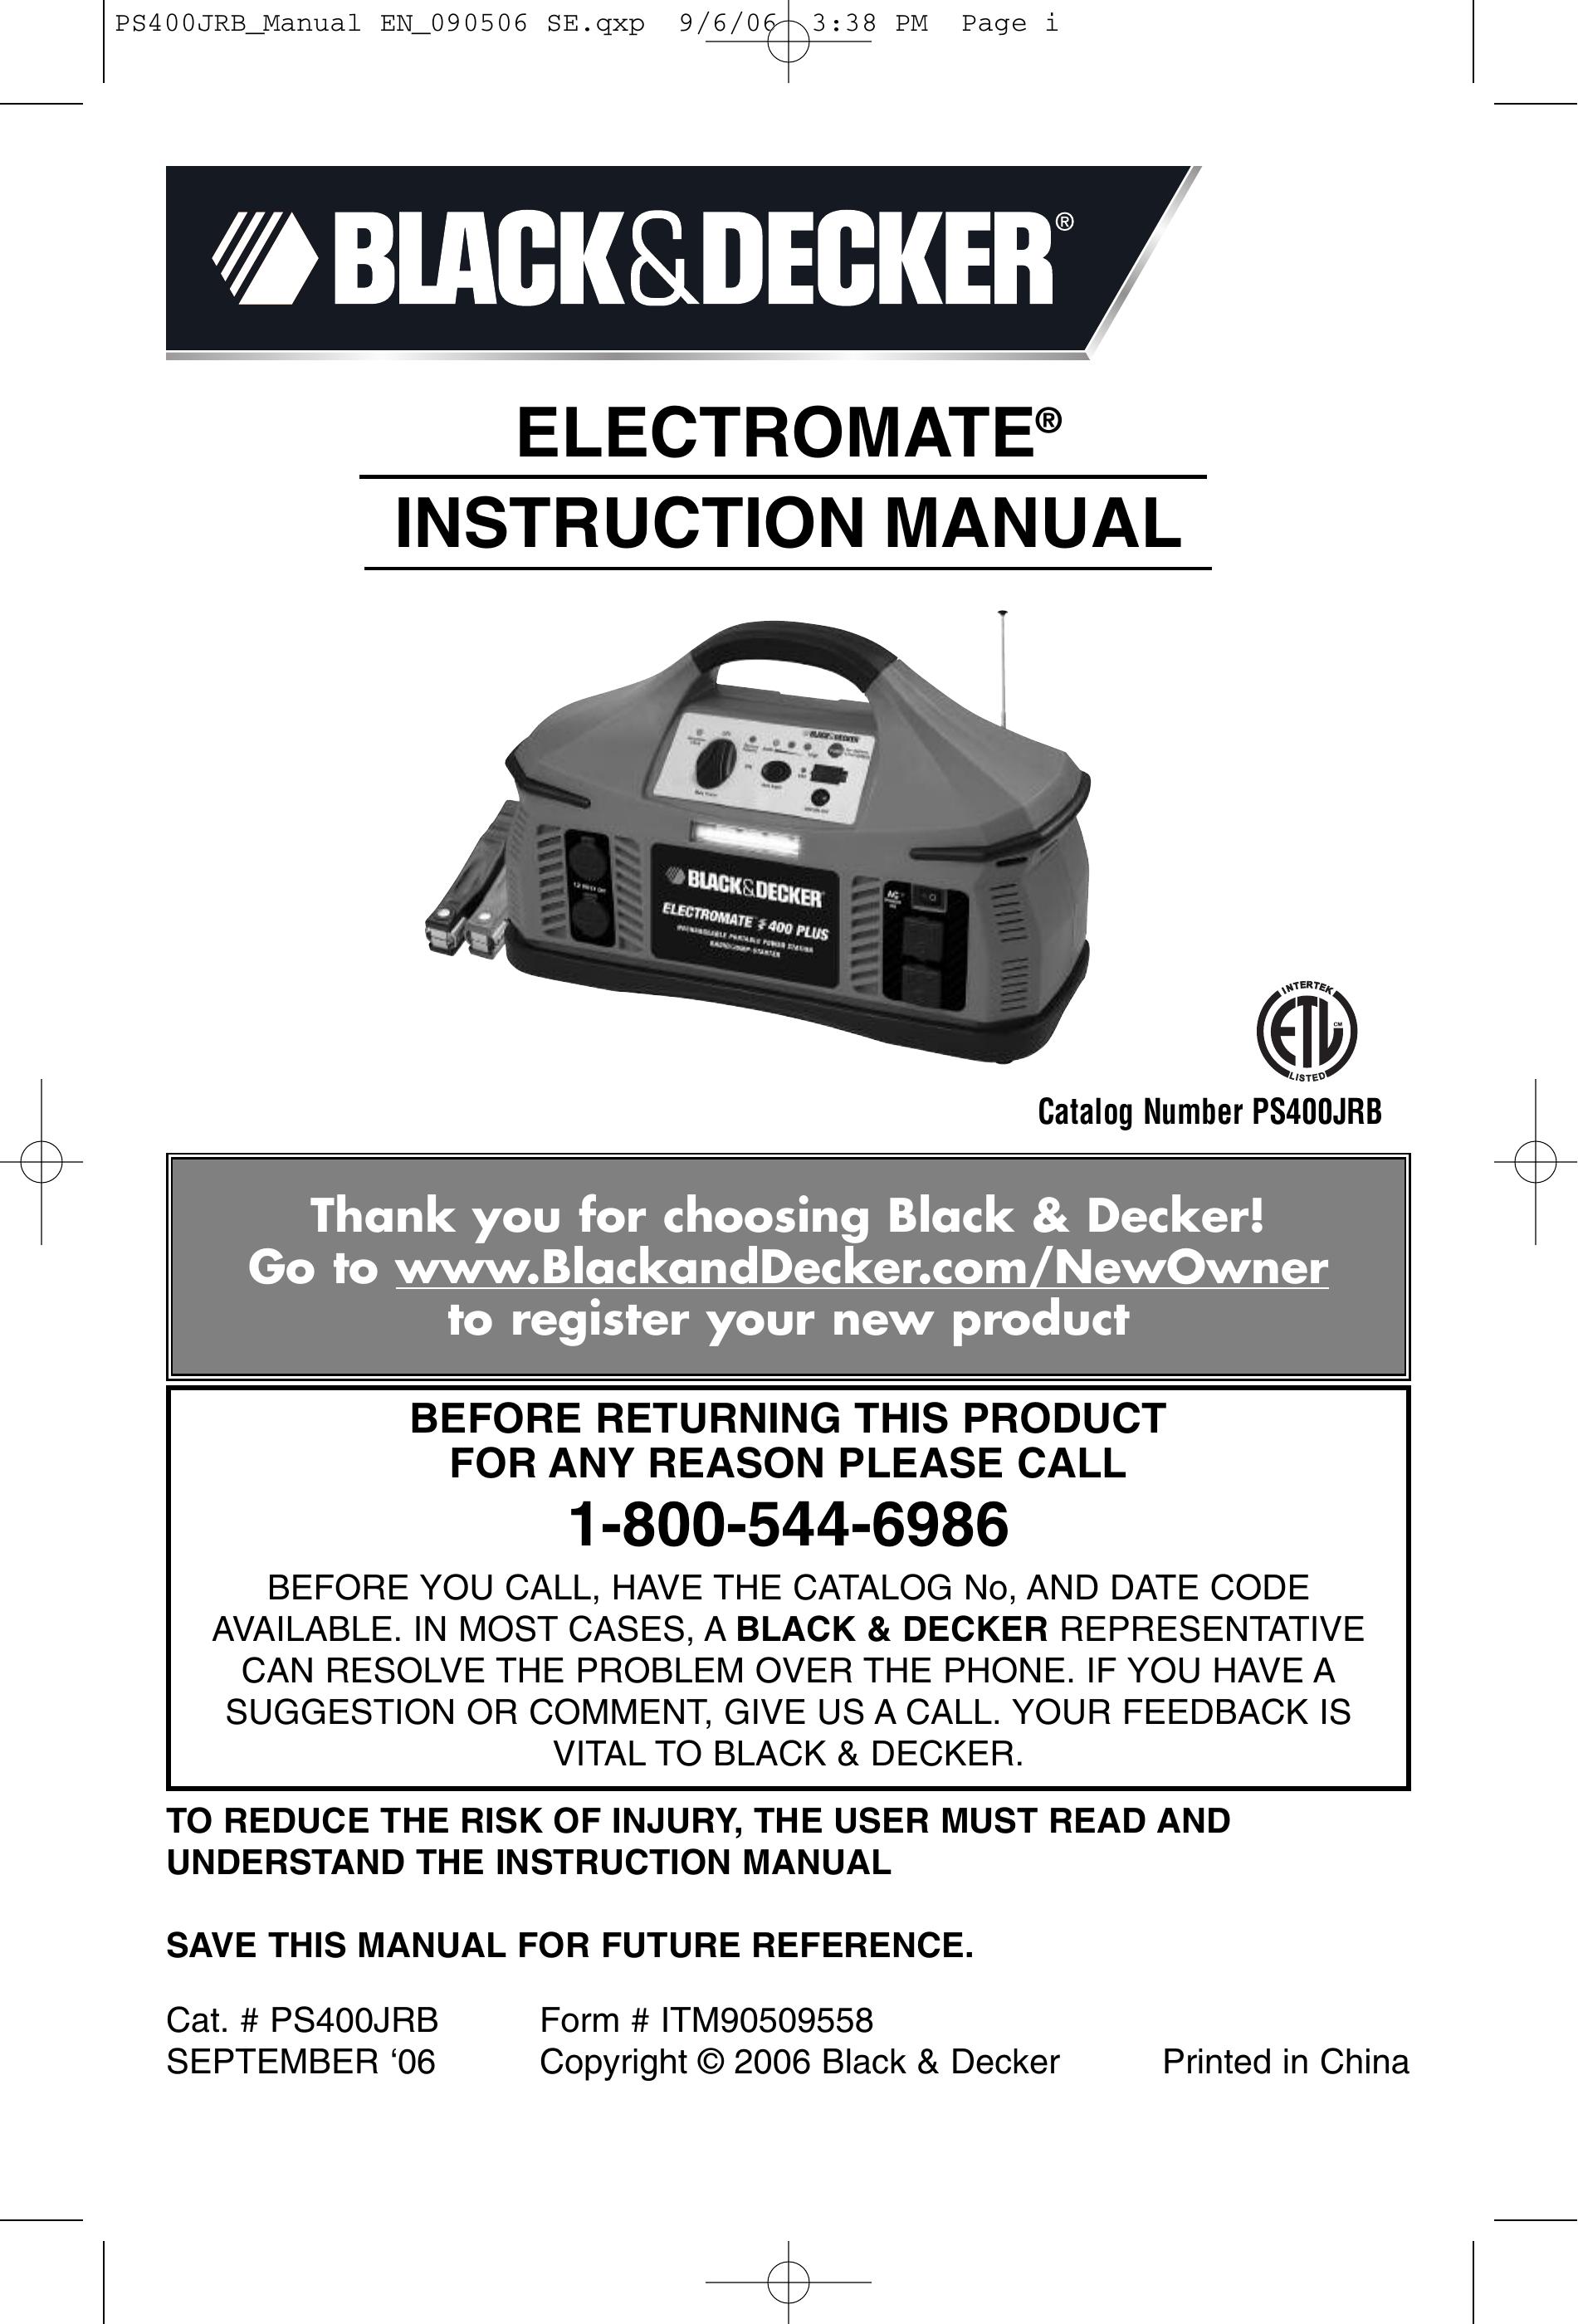 Black & Decker PS400JRB Sleep Apnea Machine User Manual